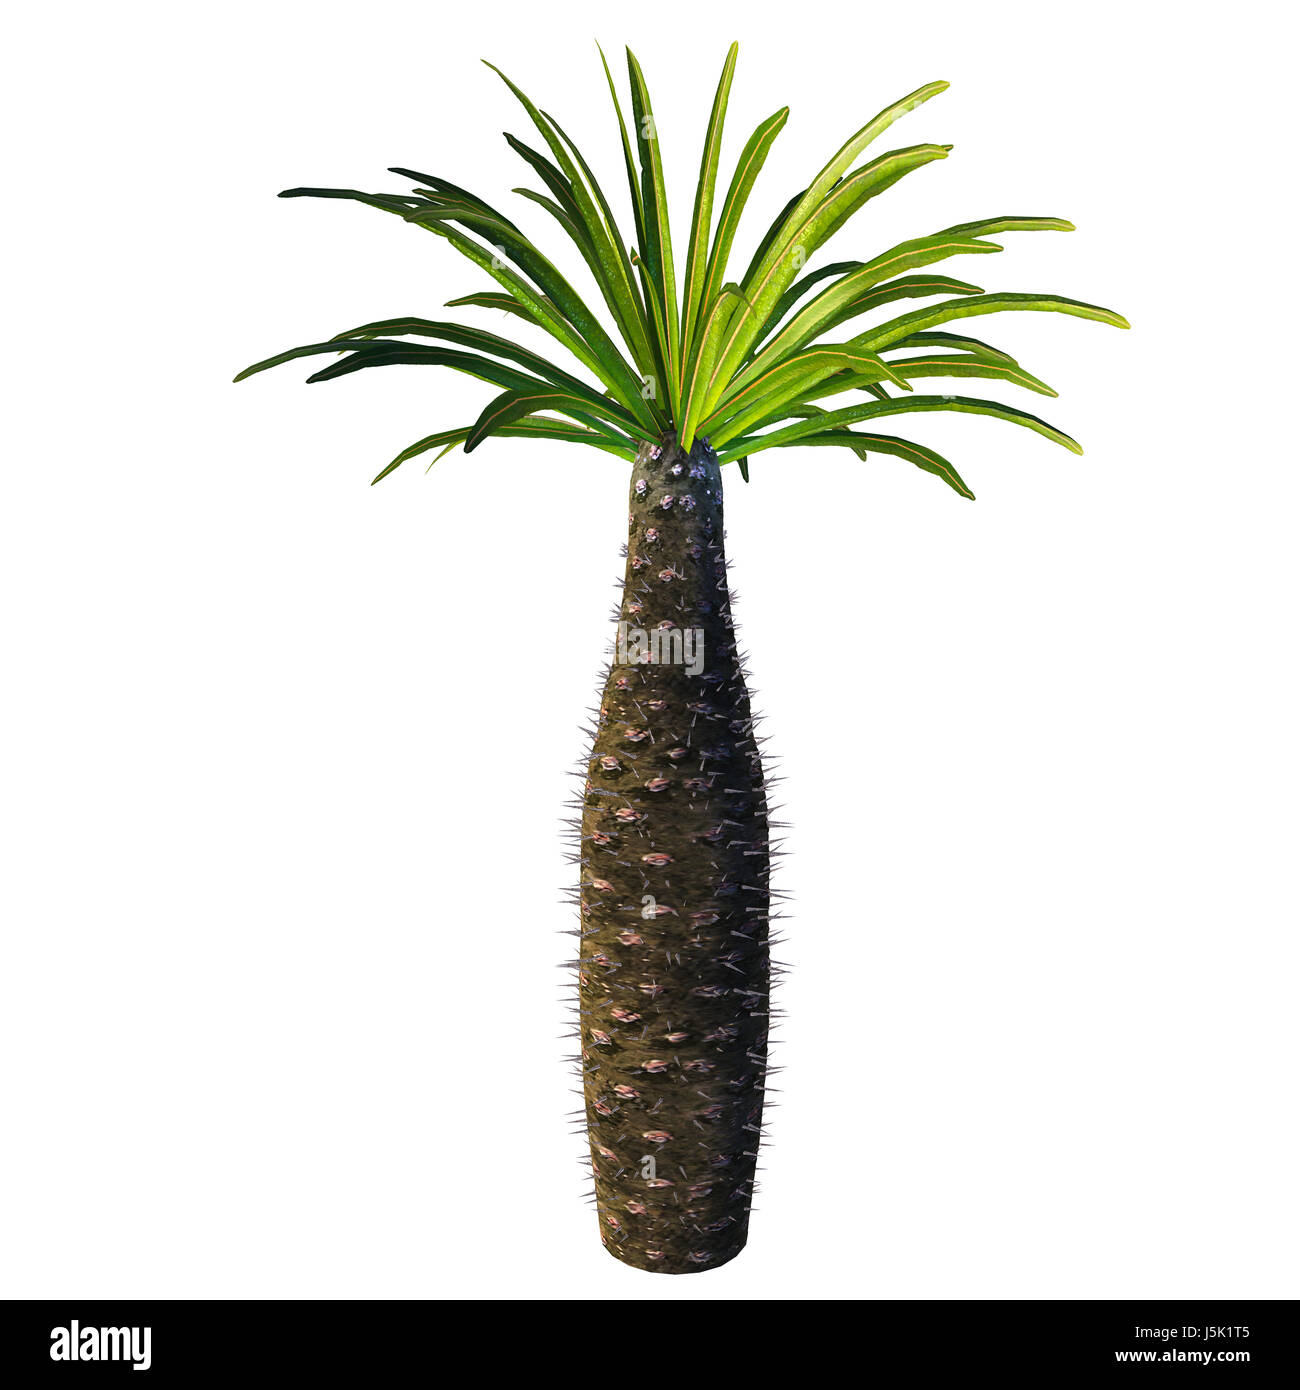 Arbre bouteille africaine - Pachypodium est un genre de plante qui vit dans les arbres de l'Afrique dans des conditions sèches et arides sur Madagascar et le continent. Banque D'Images